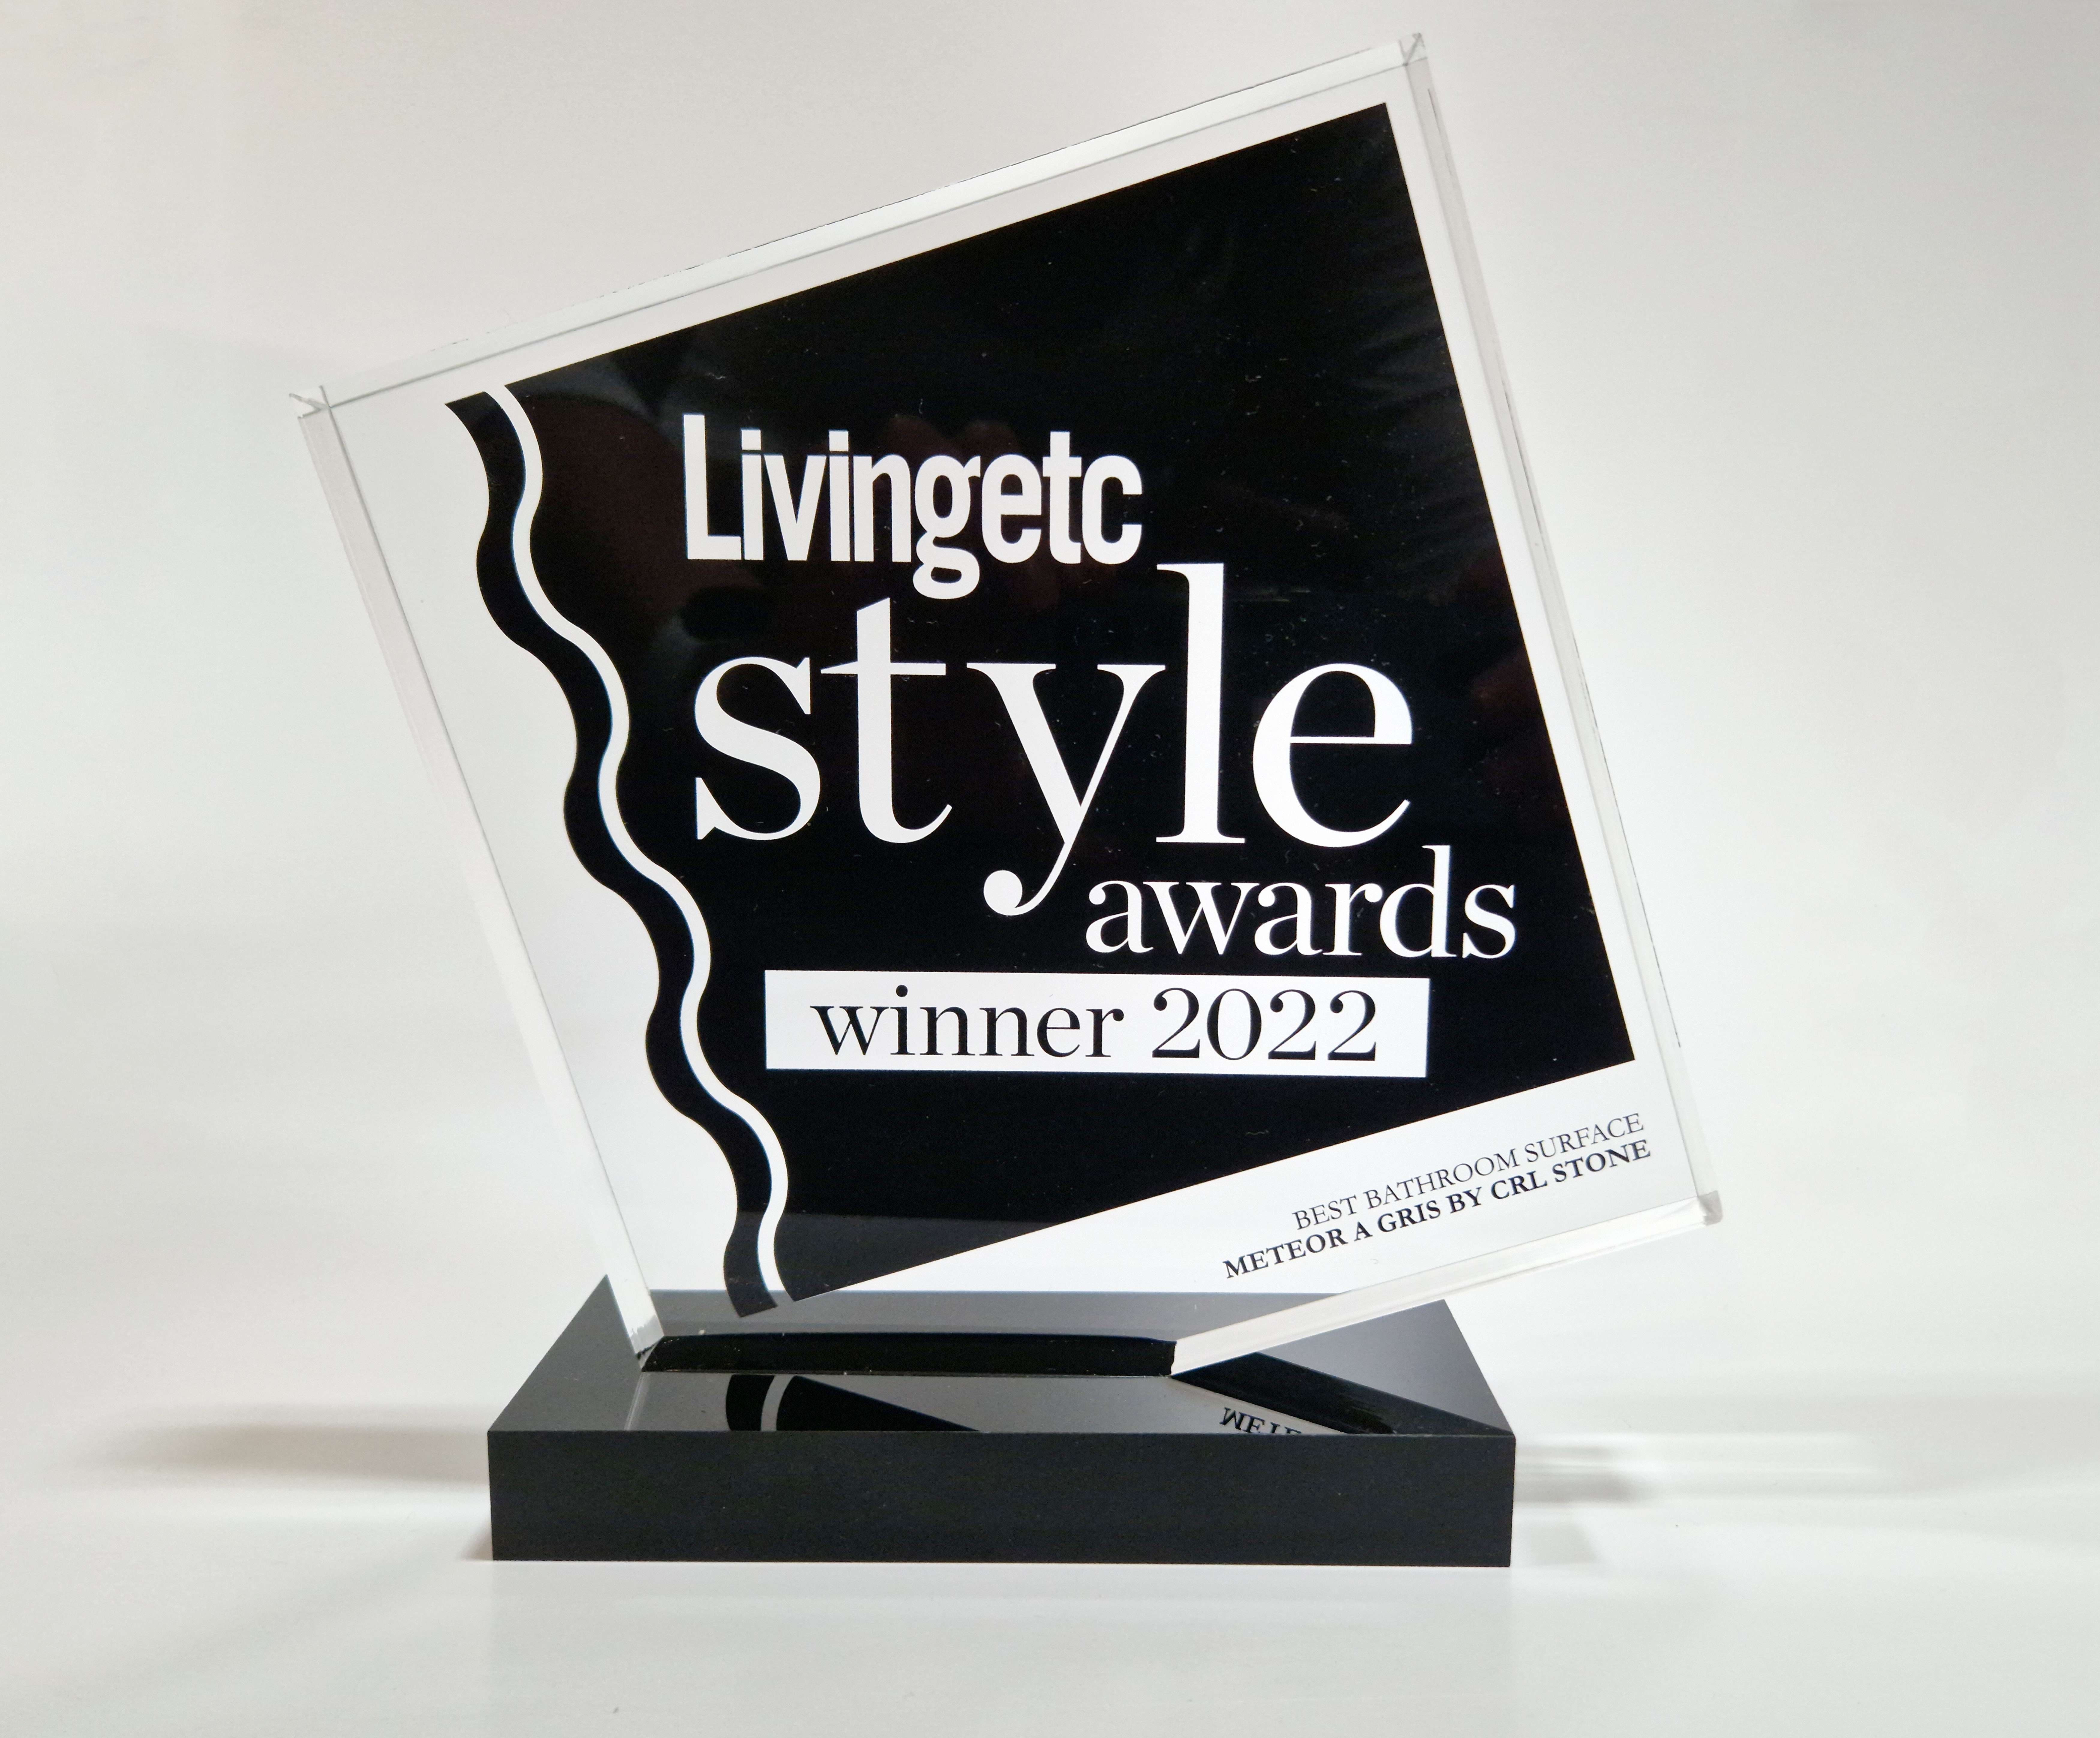 Meteora Gris is Best Bathroom Surface in Livingetc Style Awards 2022